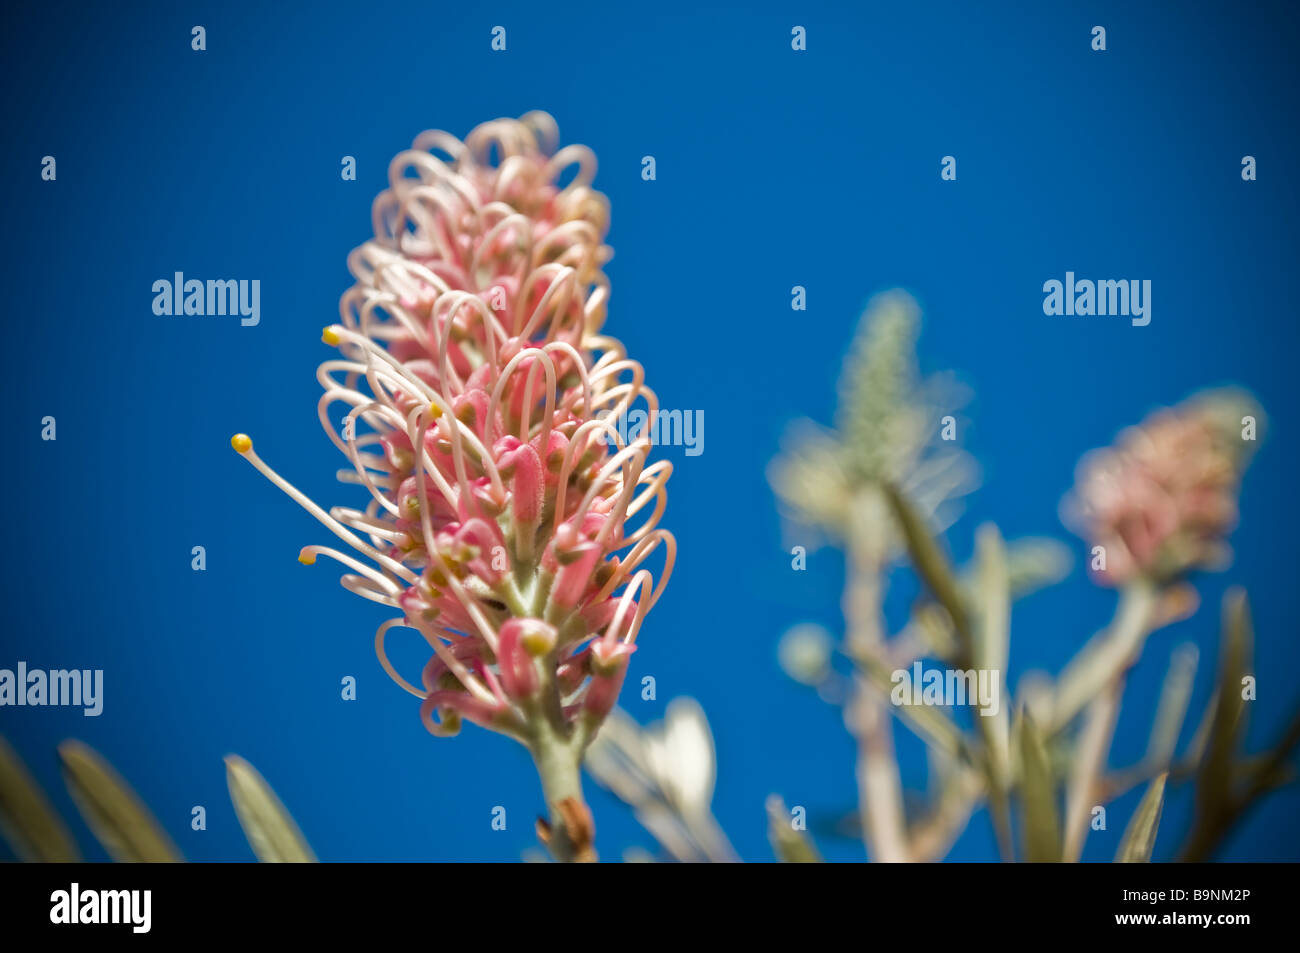 La flore australienne typique un Red Grevillea Banksii famille Proteaceaein Automne à Balmain a également appelé à Hawaii Kahili flower Banque D'Images